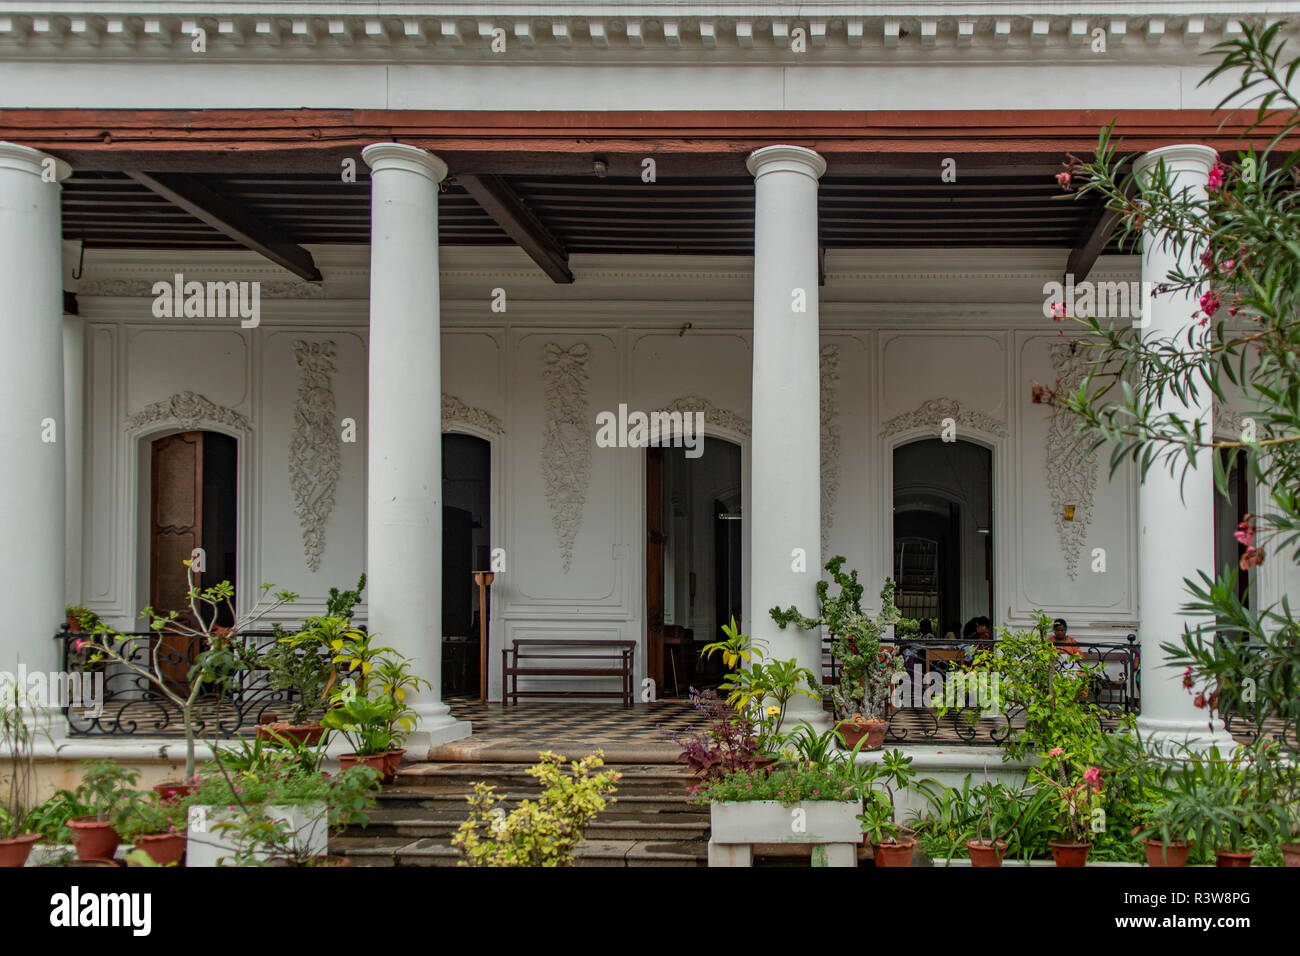 Bâtiment colonial à piliers, Quartier Français, Pondicherry, Tamil Nadu, Inde Banque D'Images